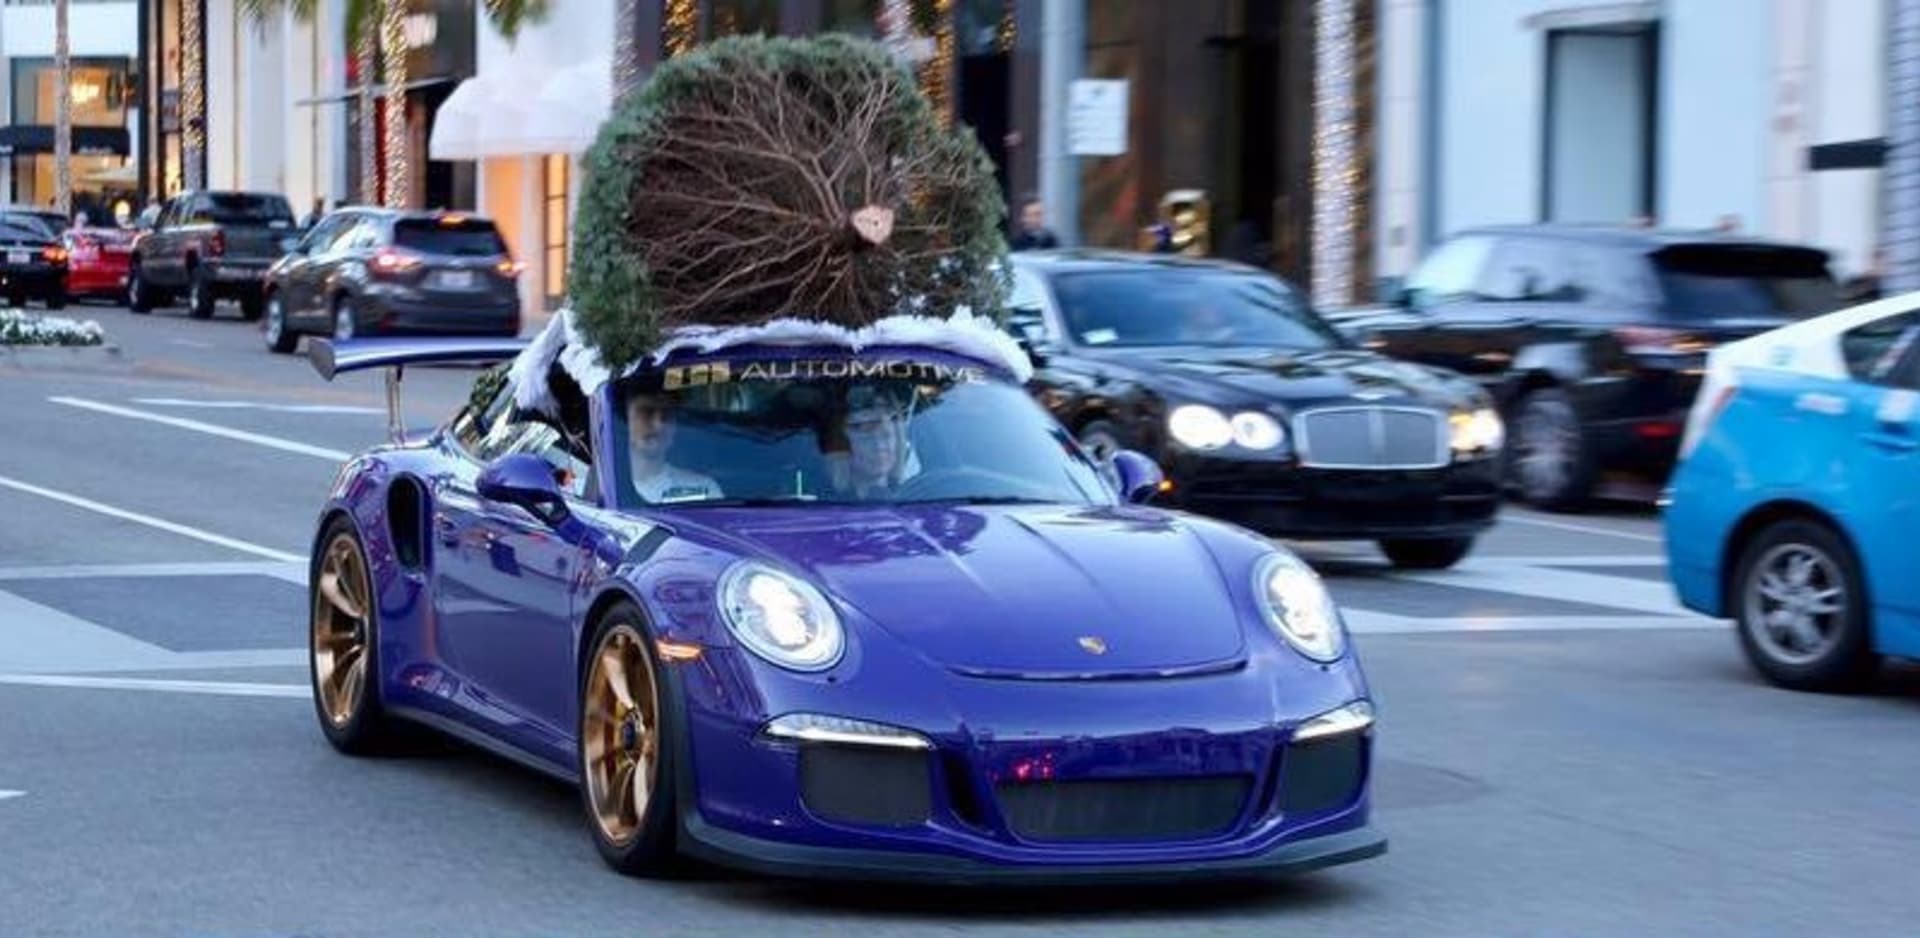 Vánoční nákupy ve stylu! Stromeček vezli v Porsche GT3